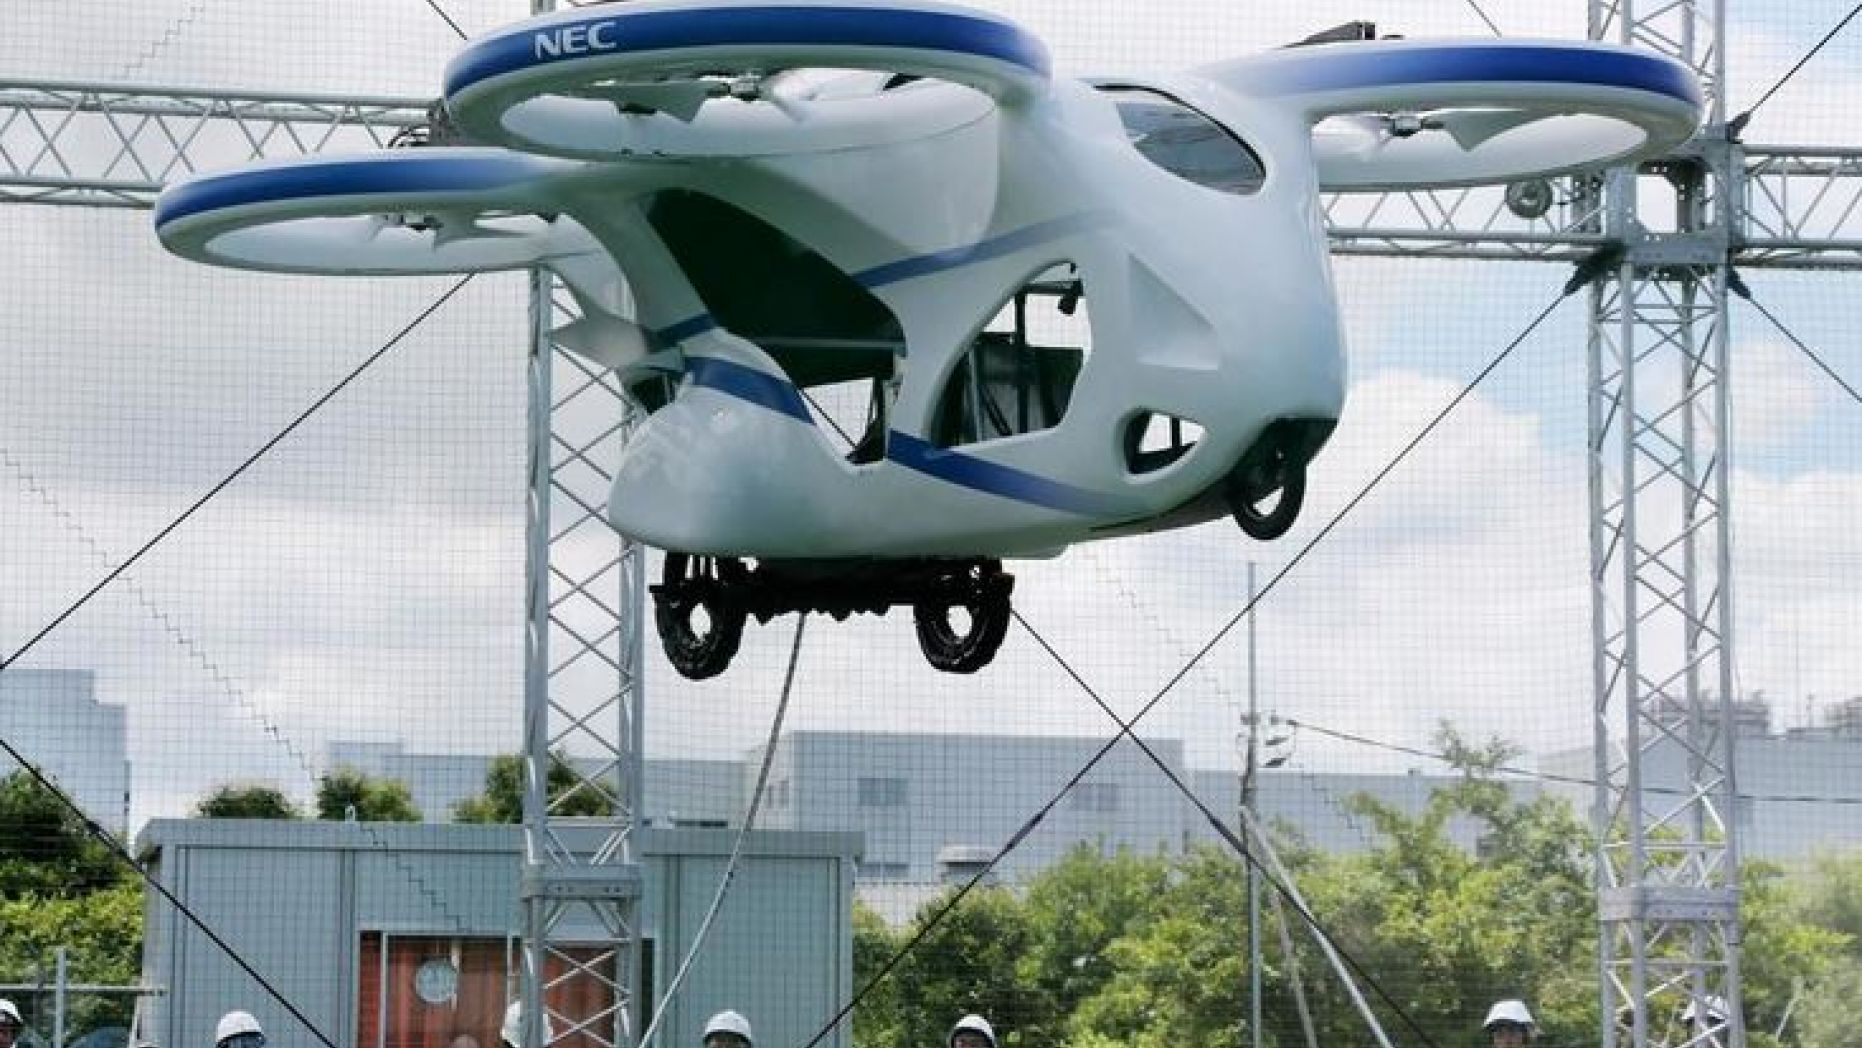 Carro volador futurista flota sobre el suelo durante casi un minuto